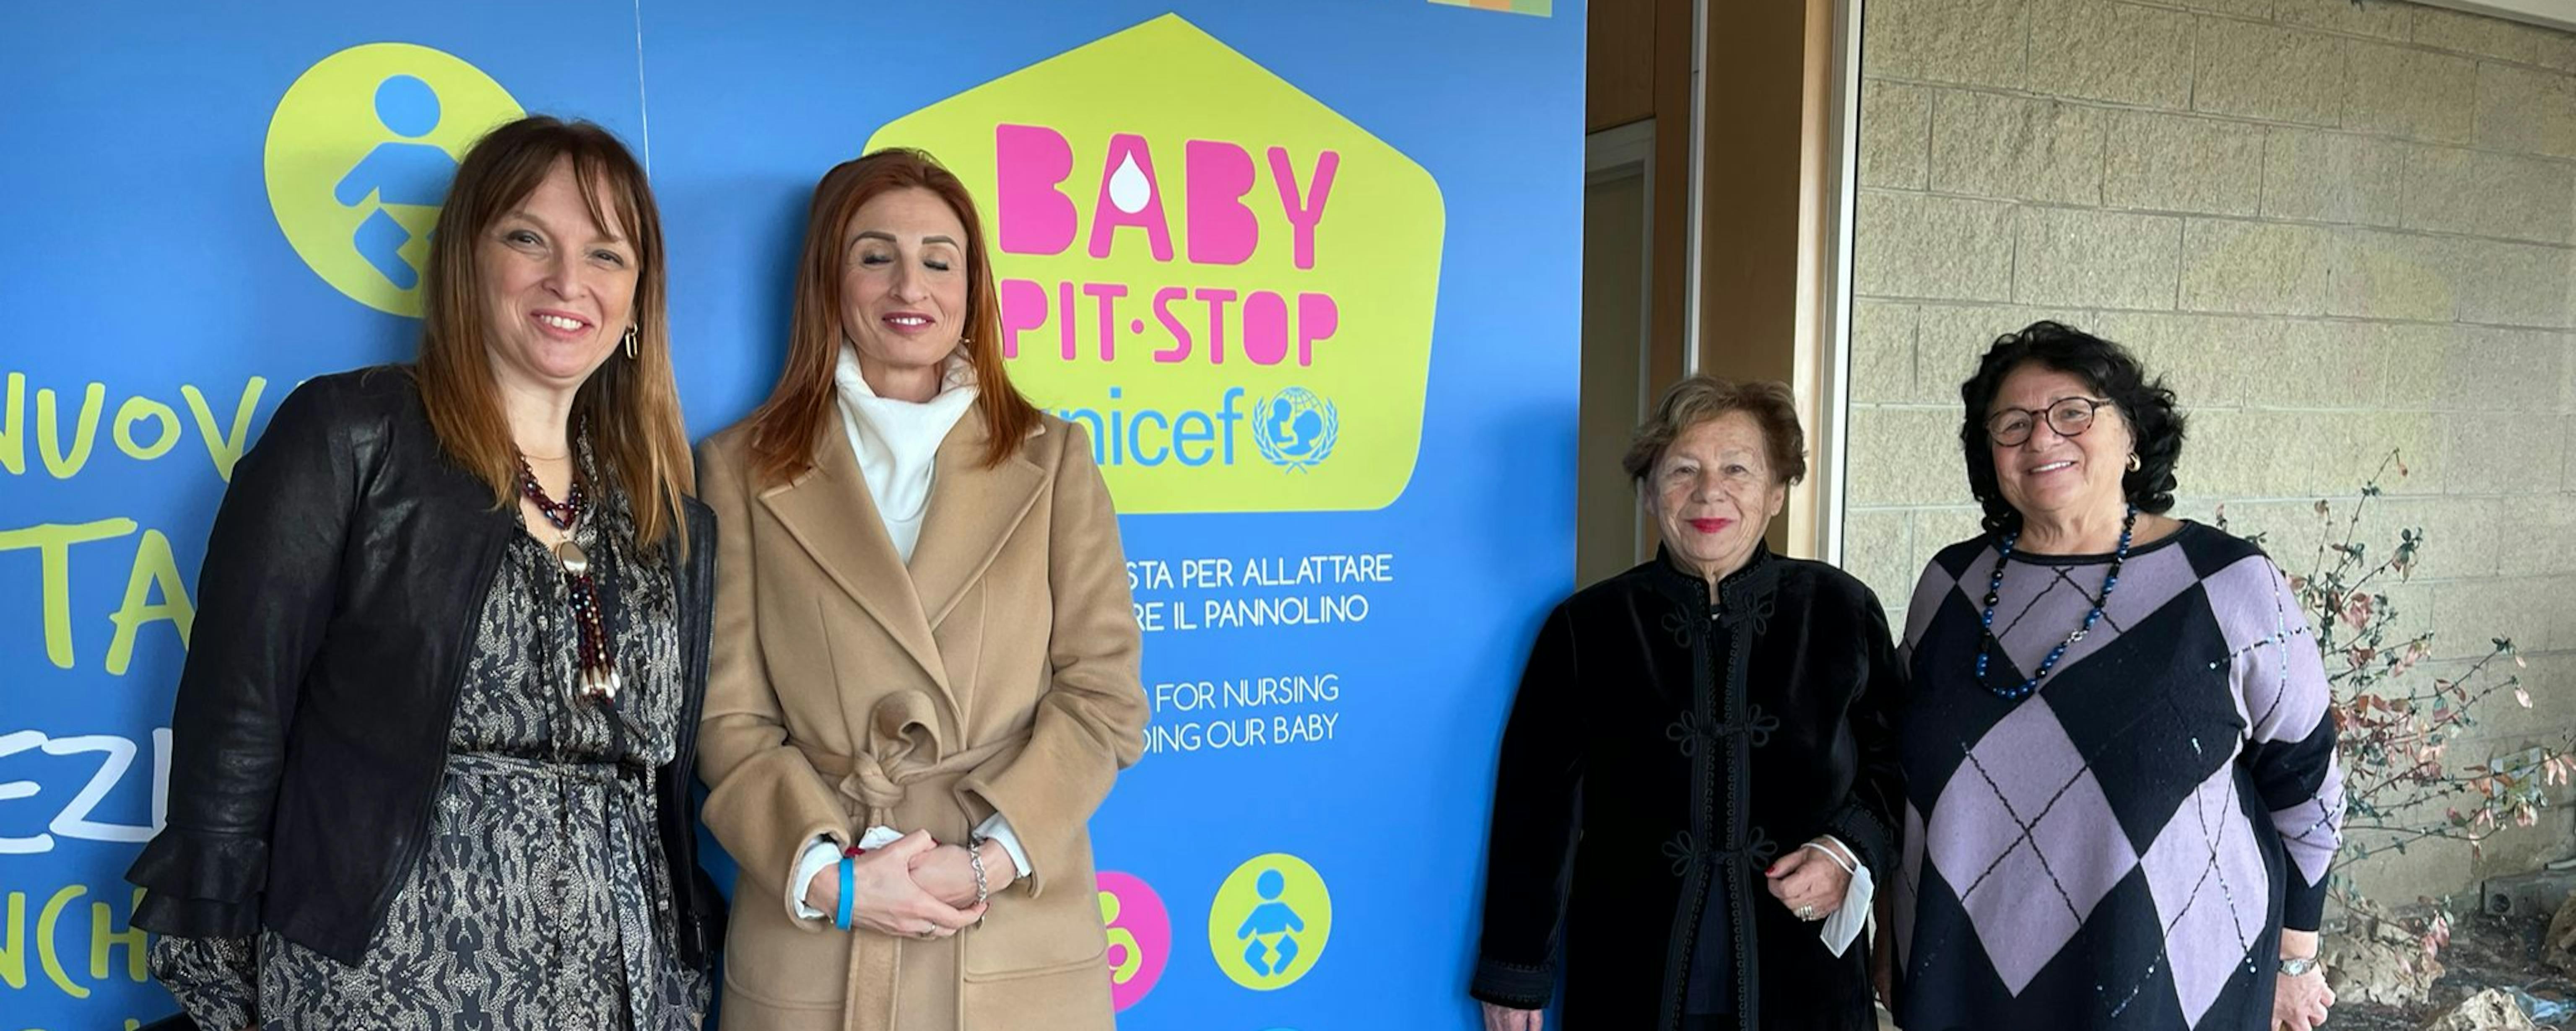 Inaugurazione baby pit stop asl Foggia. Presente la Presidente UNICEF Carmela Pace, la presidente regionale Giovanna Perrella e la presidente provinciale Maria Emilia De Martinis.